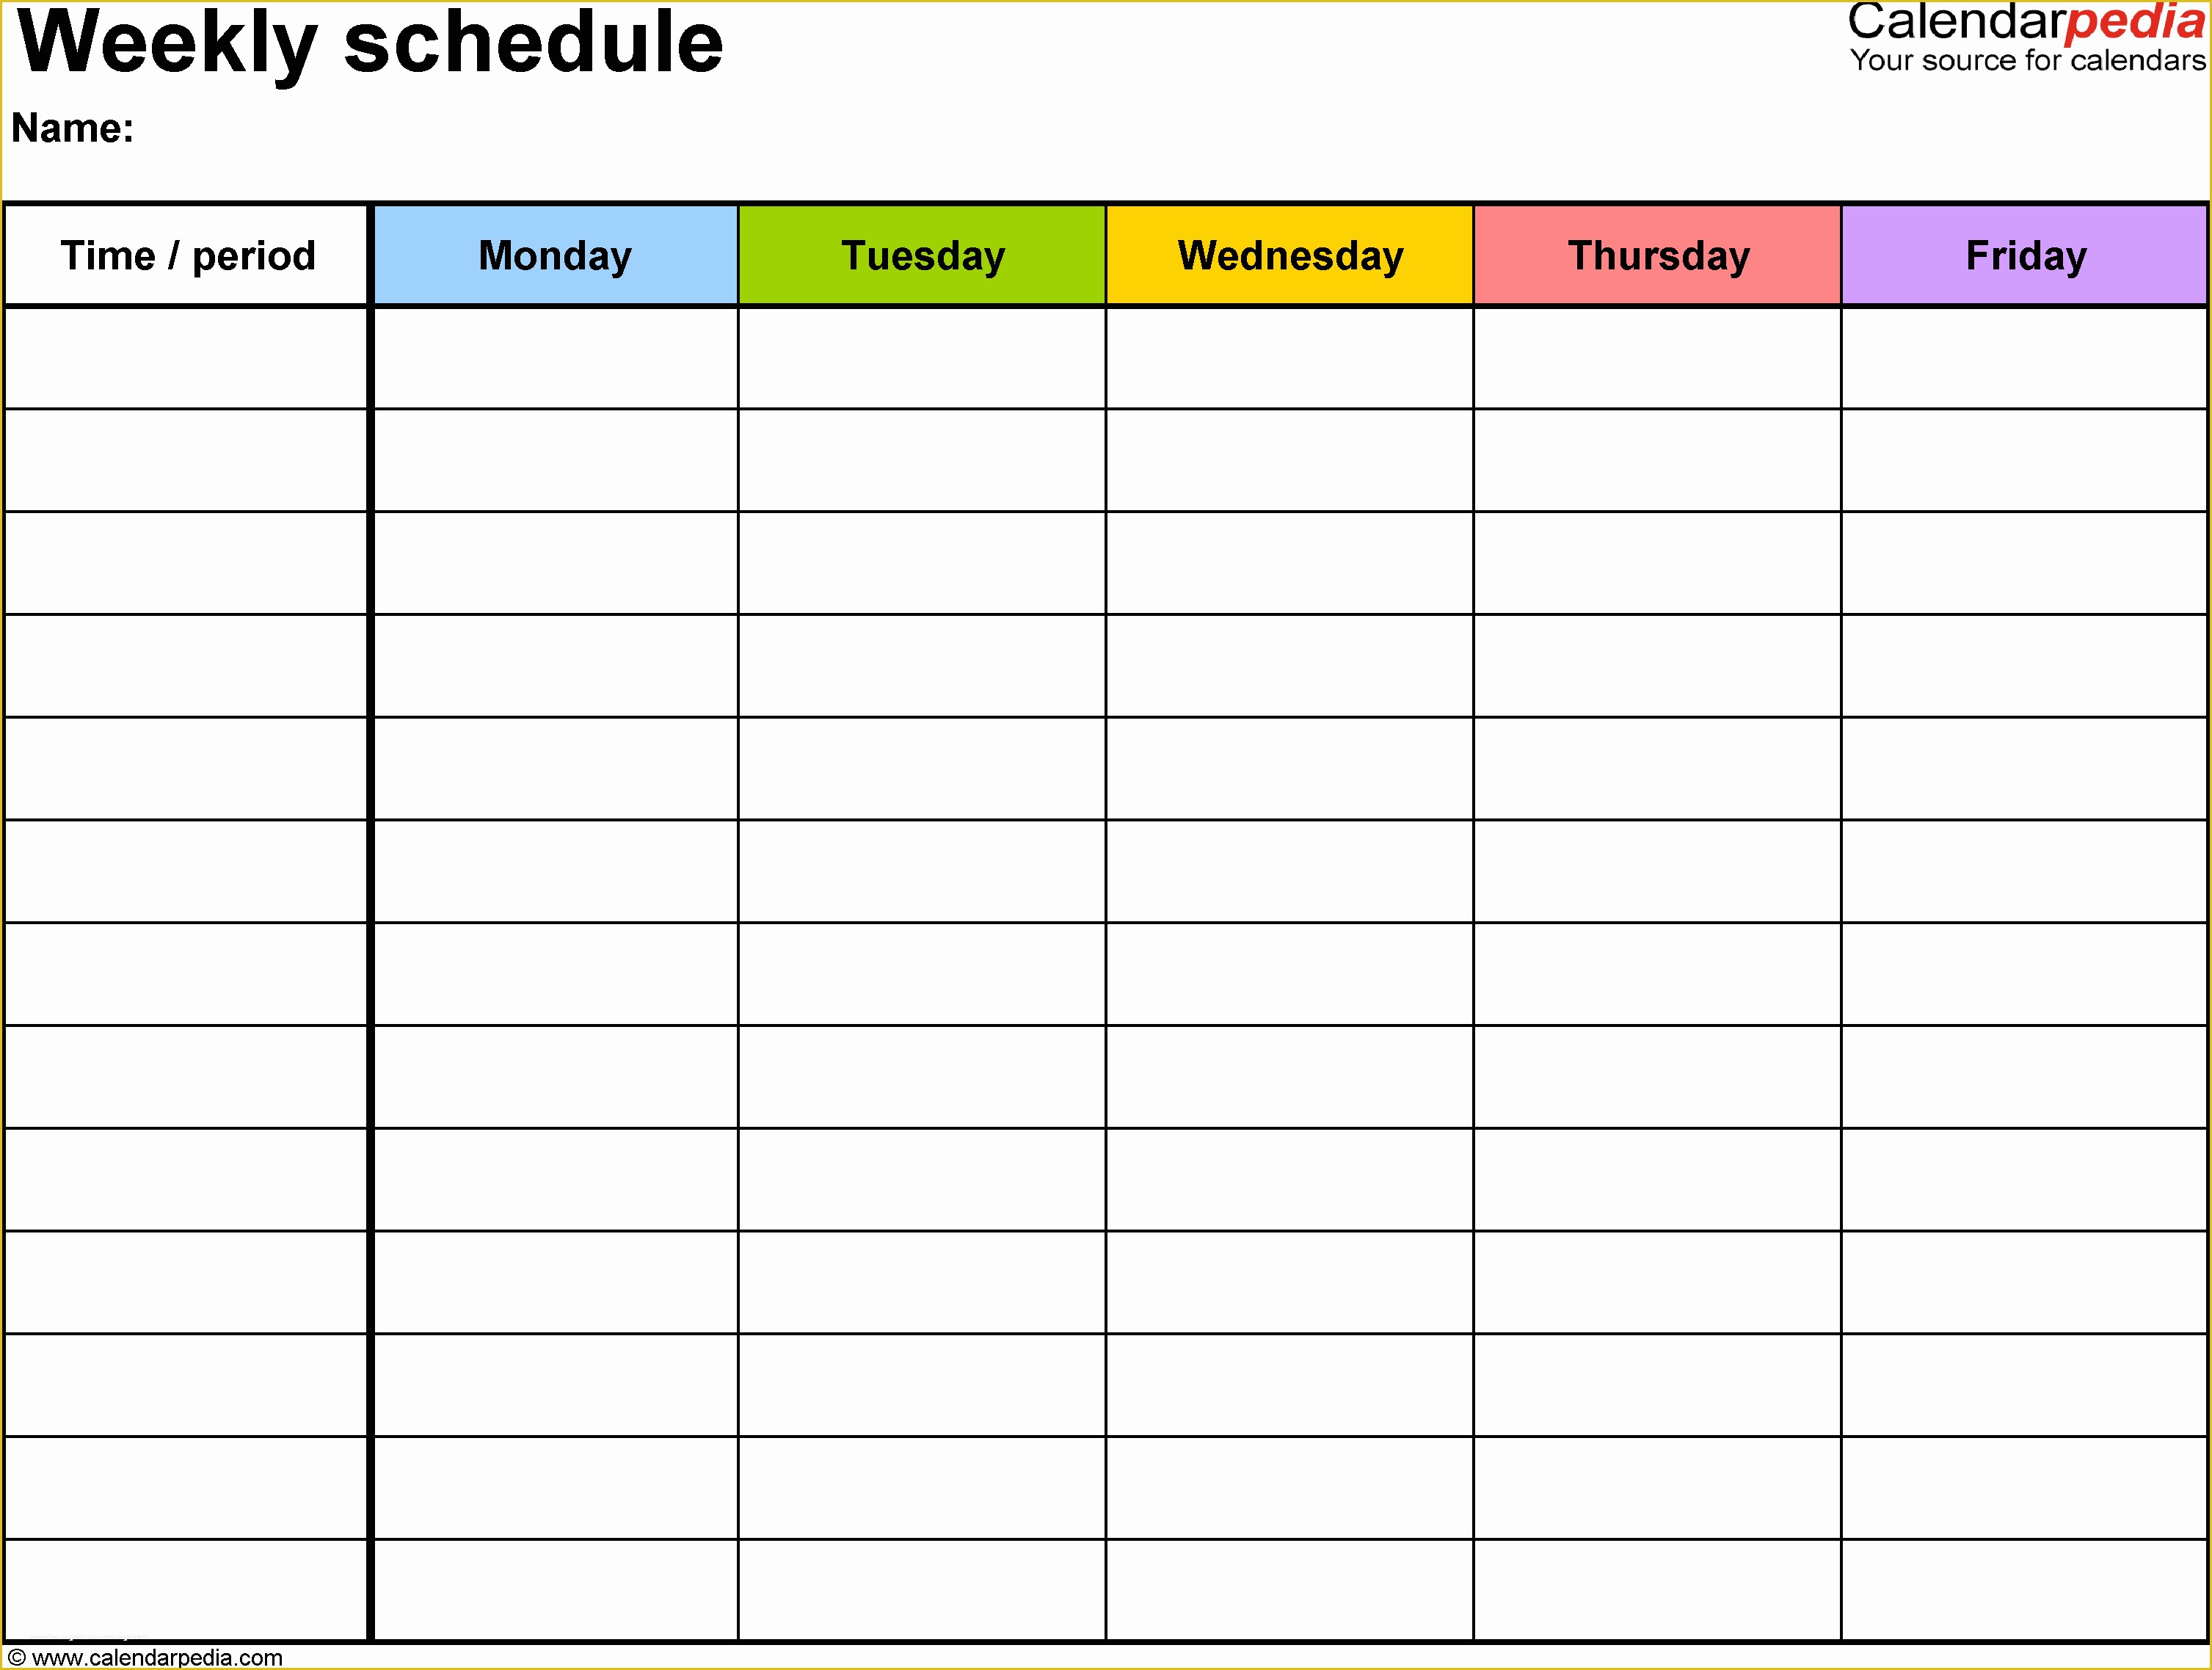 Weekly Work Schedule Template Free Download Of Weekly Calendar Template